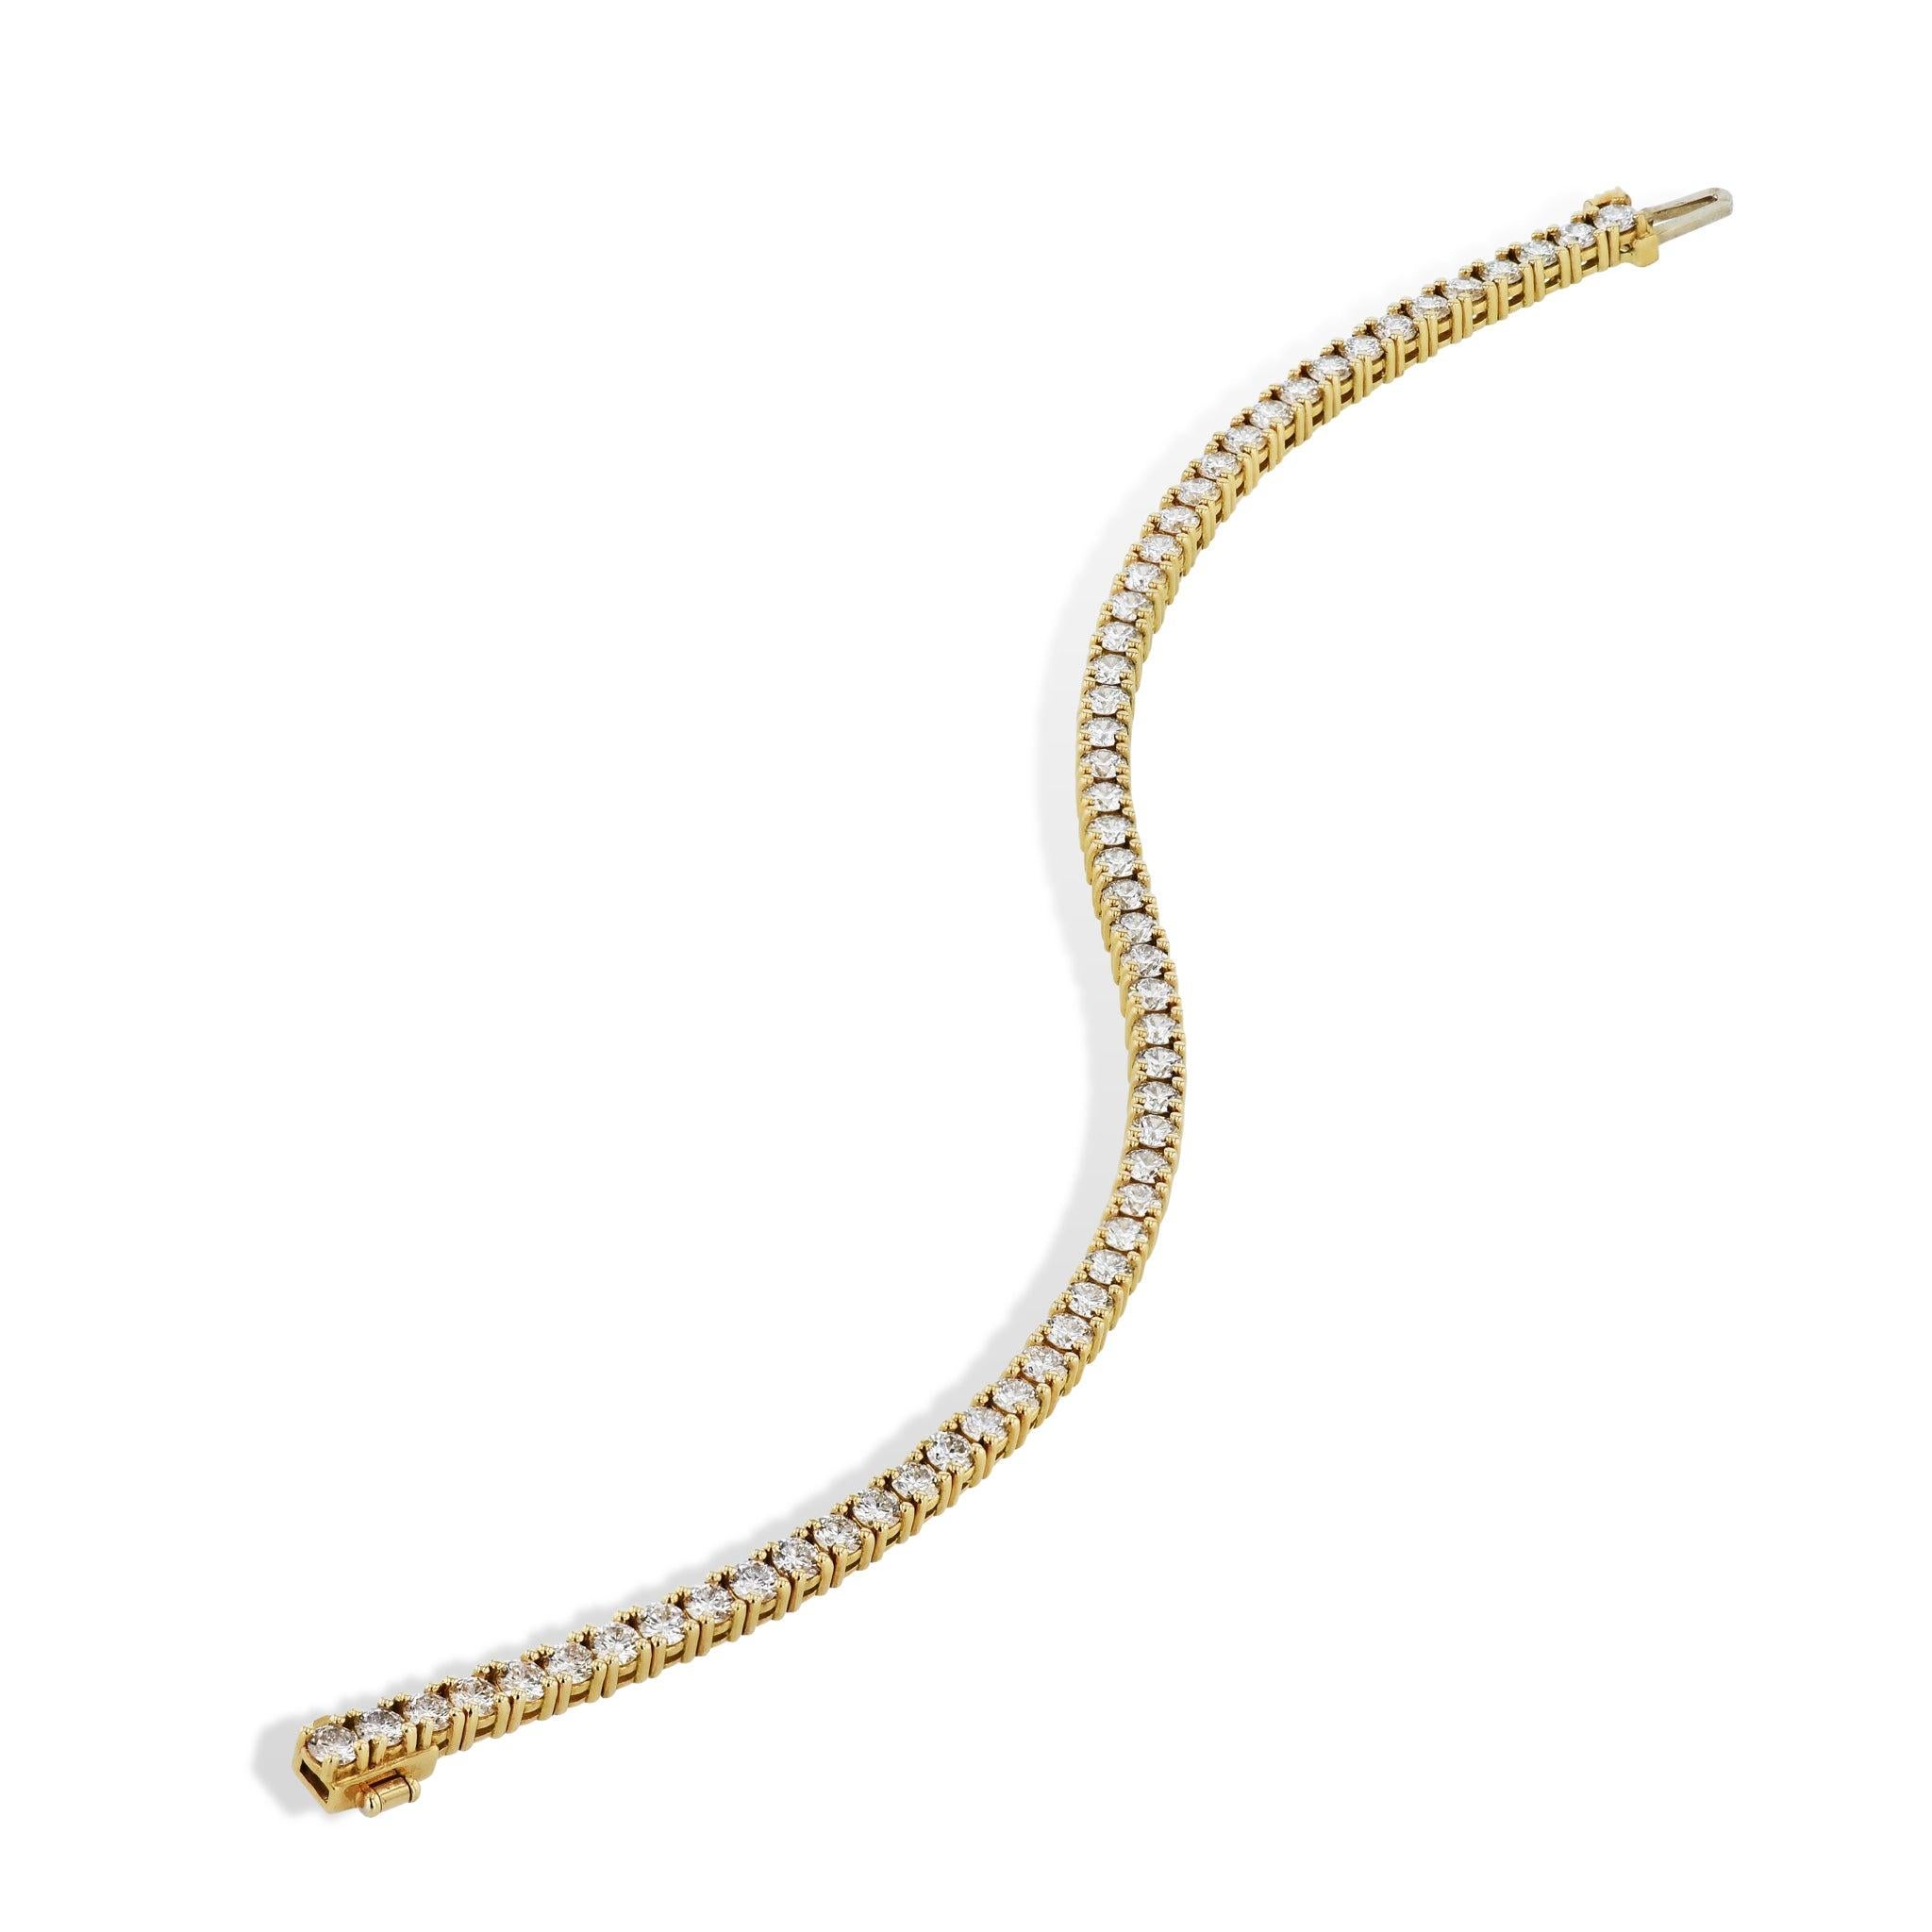 Ce magnifique bracelet de tennis en or jaune 18 carats éblouit par ses 58 éblouissants diamants ronds de taille brillante ! Montée à la main avec un sertissage à 4 branches et fabriquée de manière experte par H & H Jewels, c'est une vision à couper